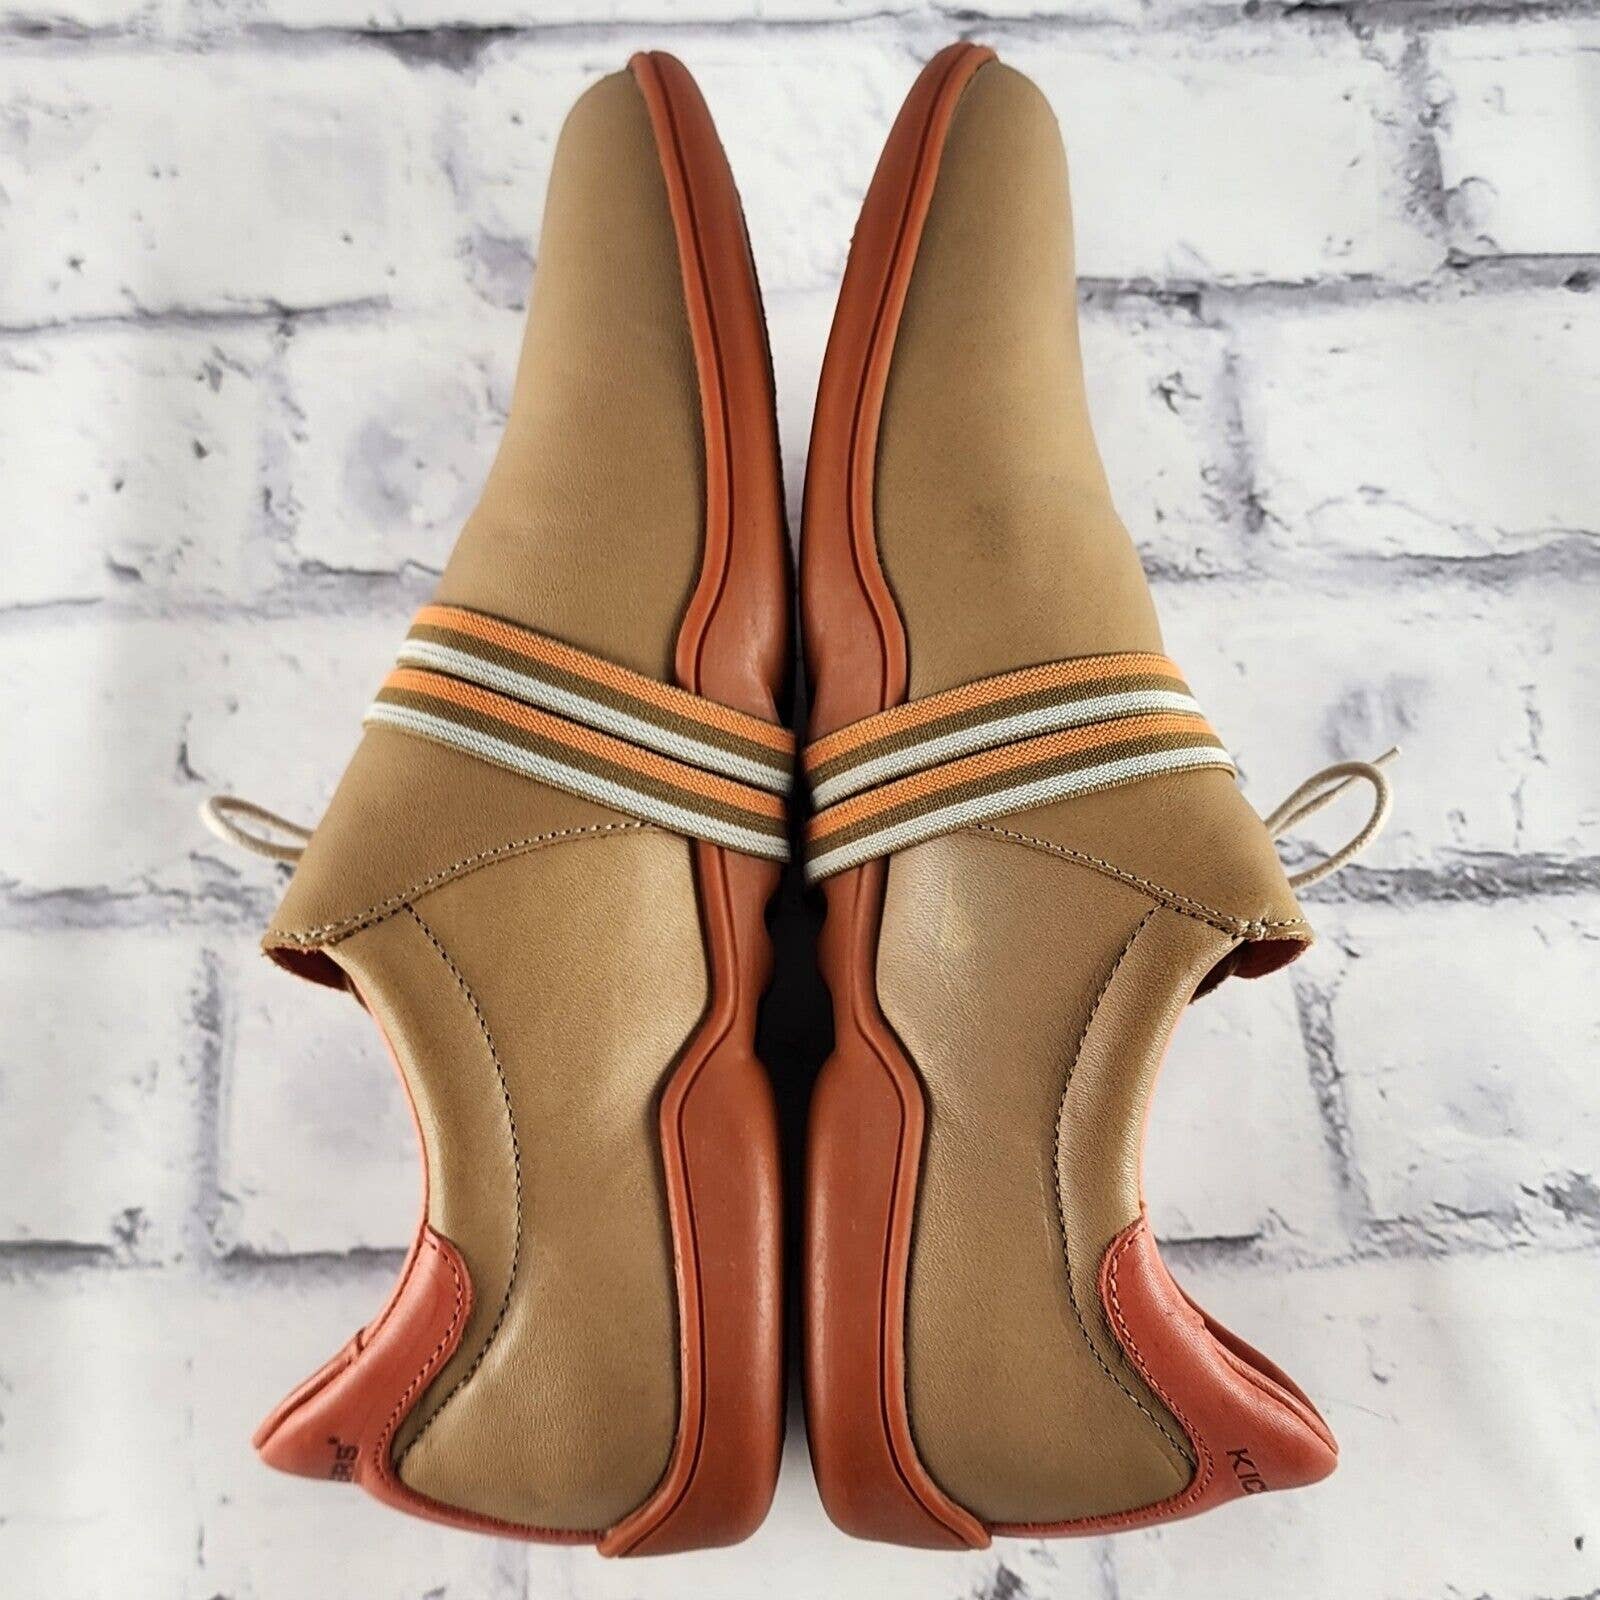 Kickers Side Lace Flats Women's Sz 38 (US 7.5) Beige & Orange Leather Sneakers